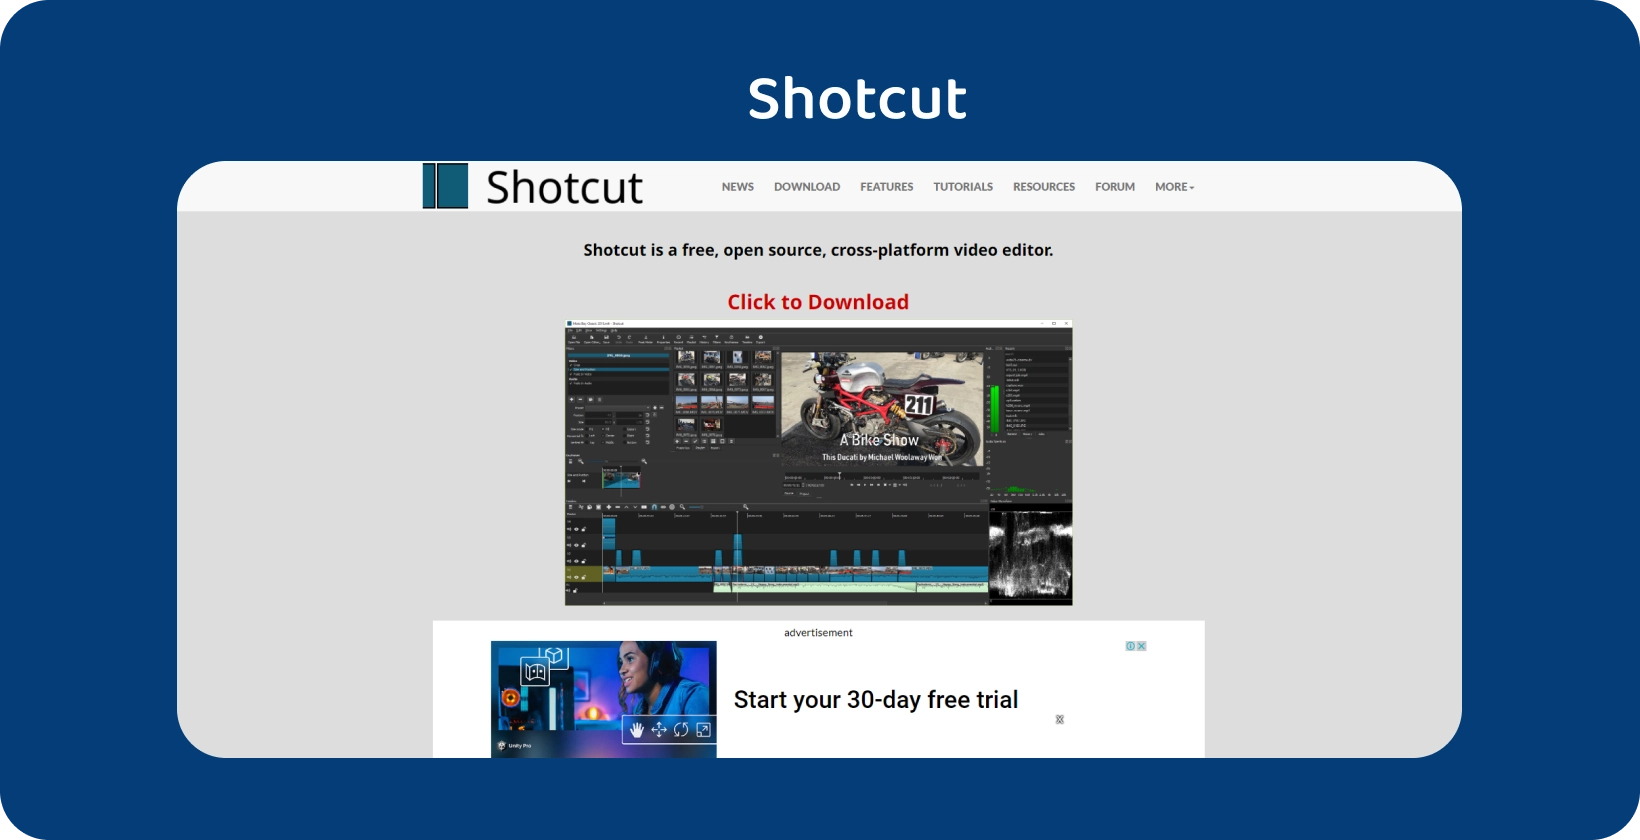 Shotcut editor interface: En detaljerad motorcykelvideo tidslinje med robusta redigeringsverktyg visas tydligt.